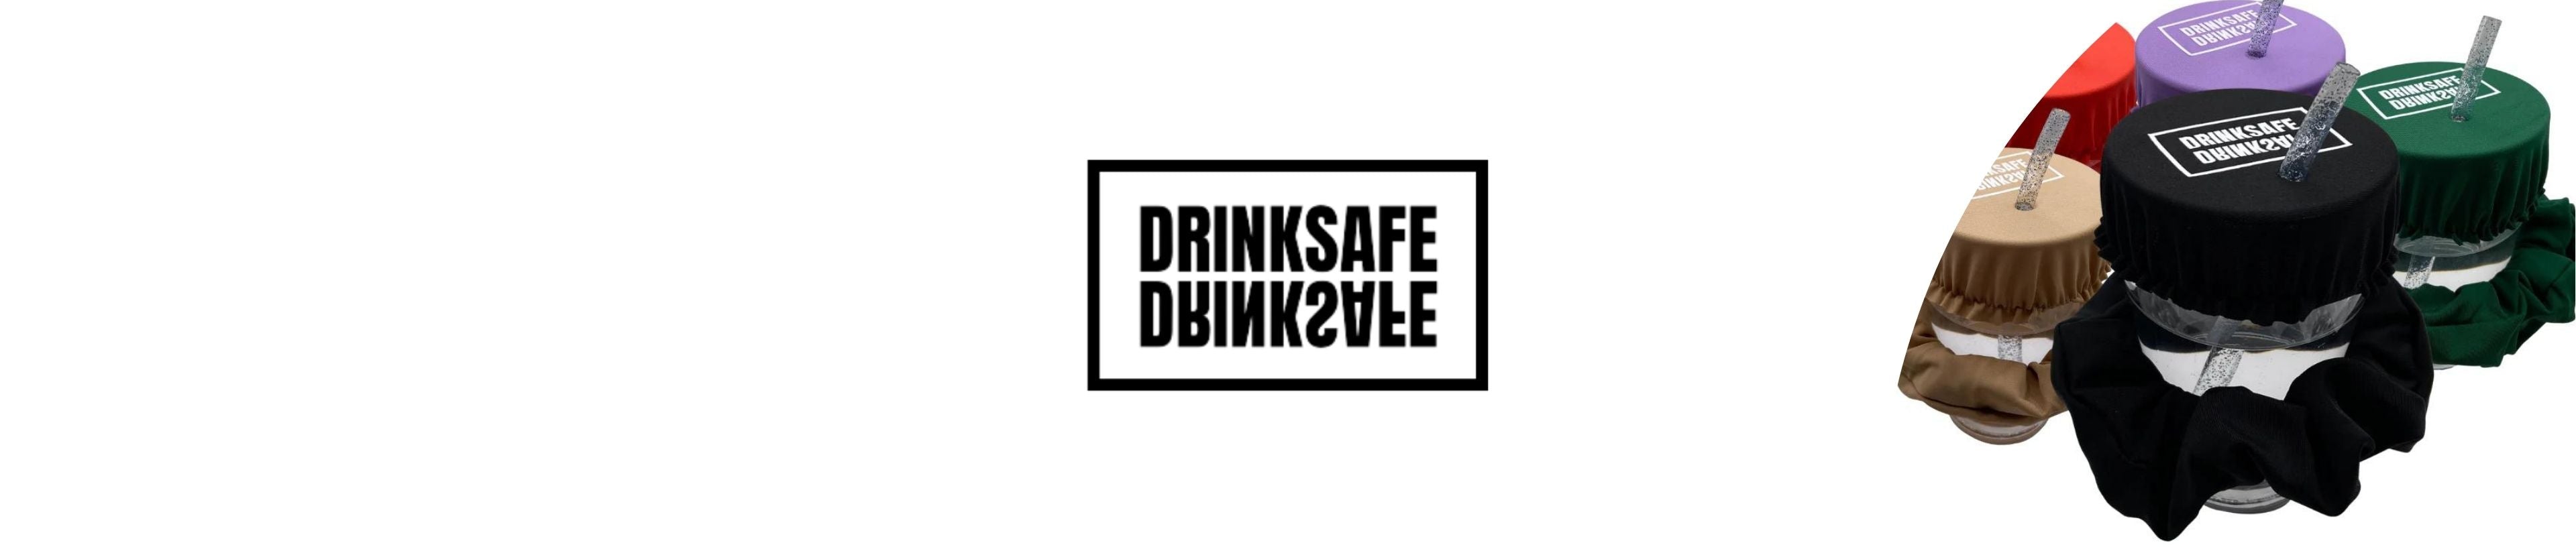 Bannière drink safe chouchou protection anti drogue